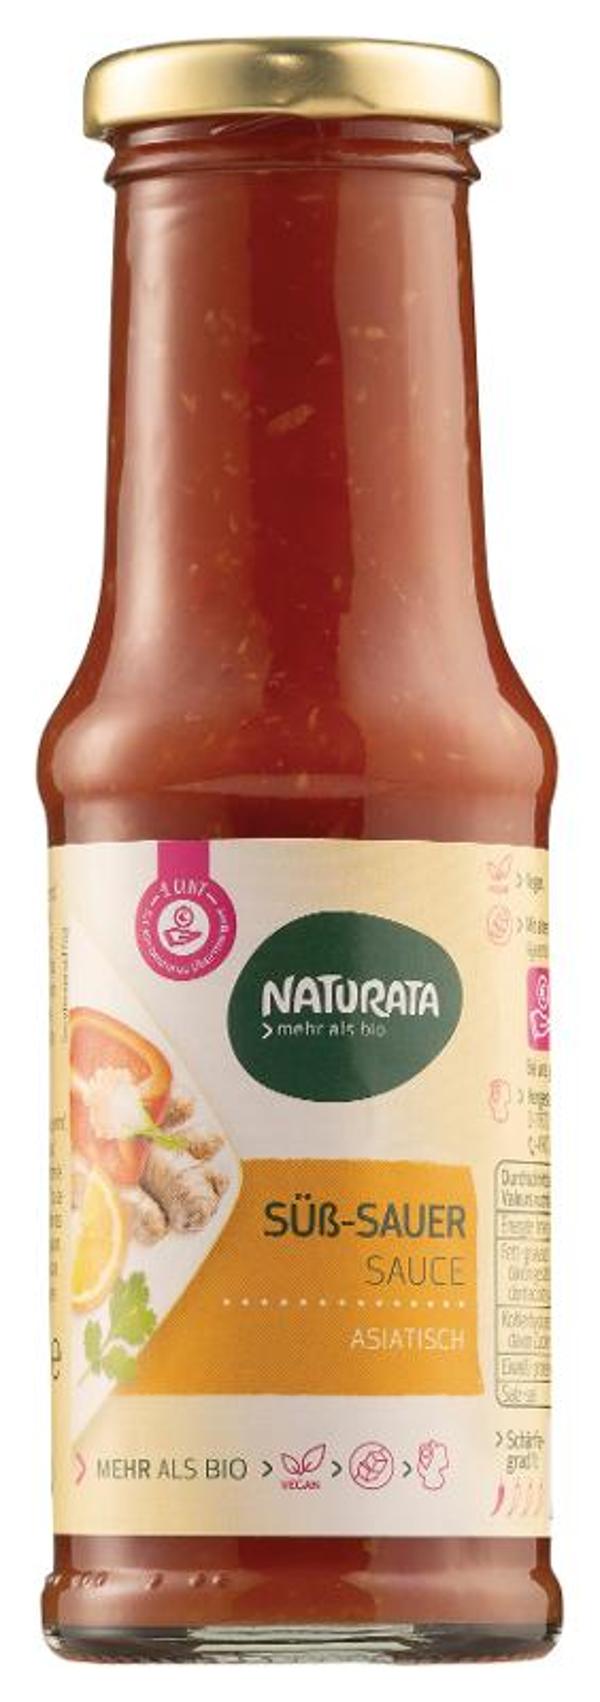 Produktfoto zu Naturata Süß Sauer Sauce - 210ml